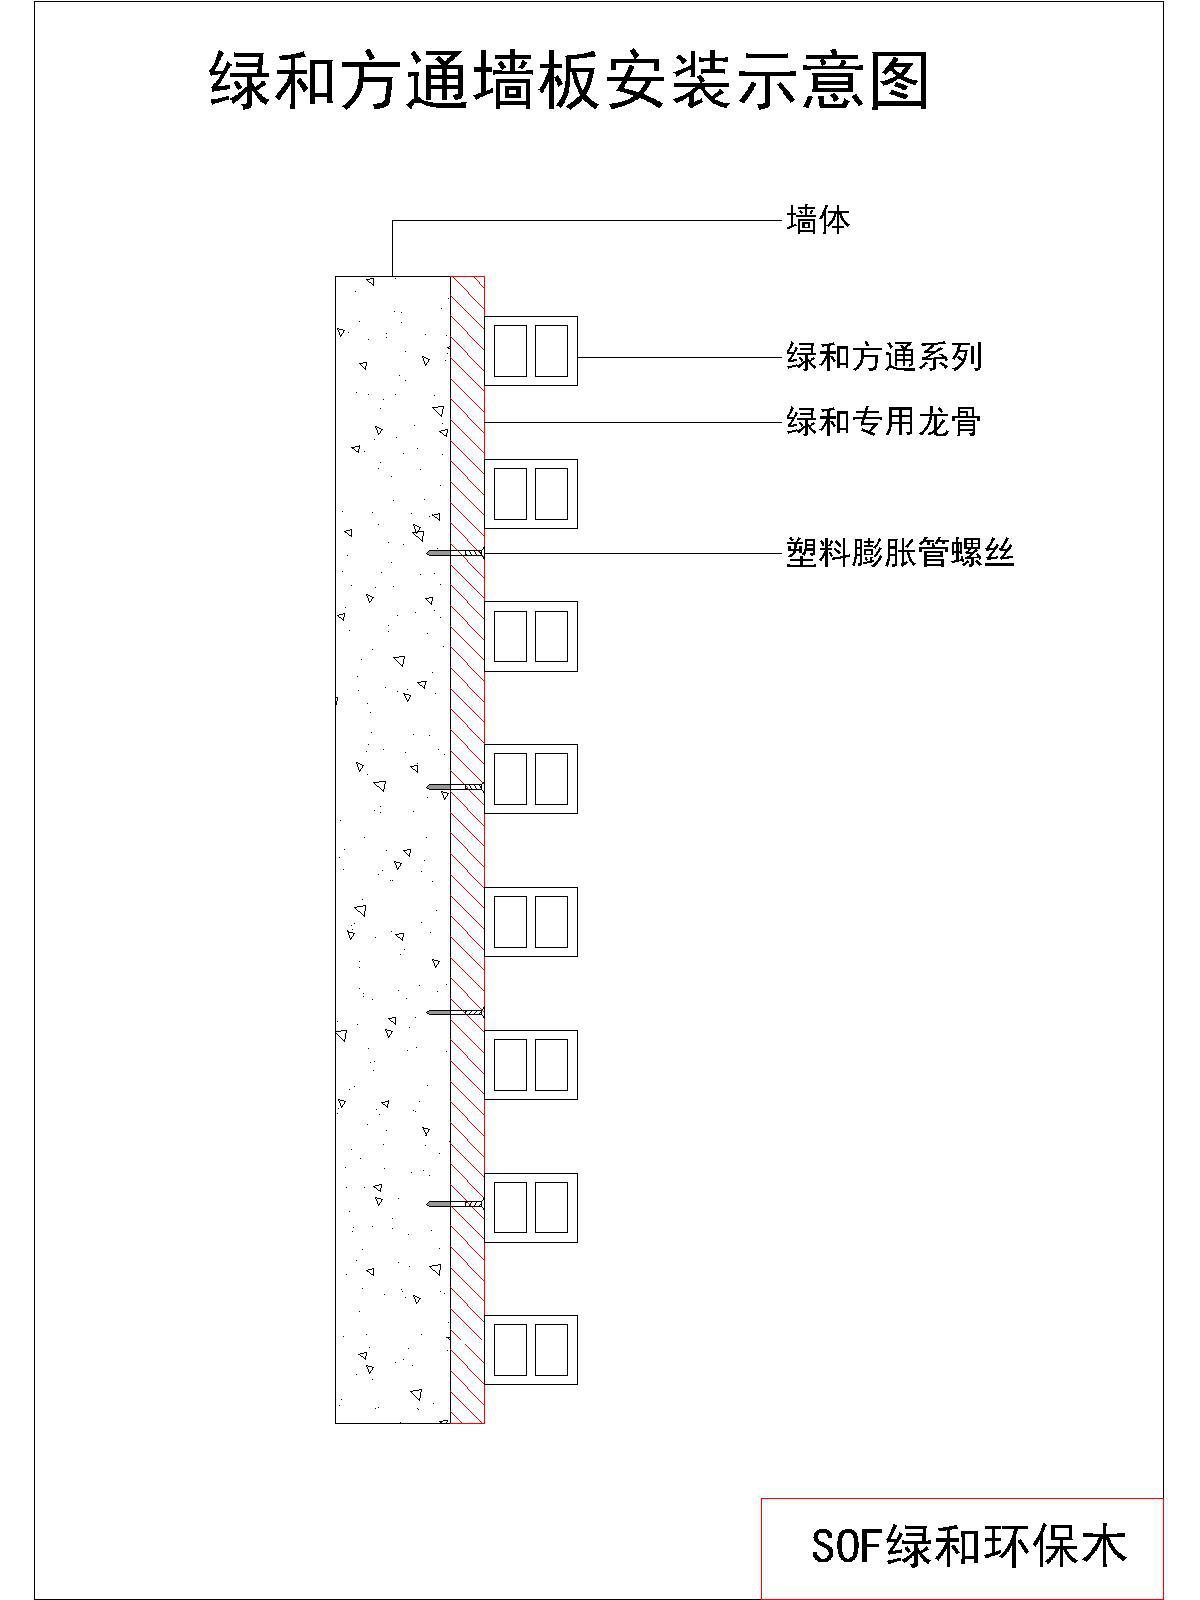 环保木外立面格栅安装节点图(方通)